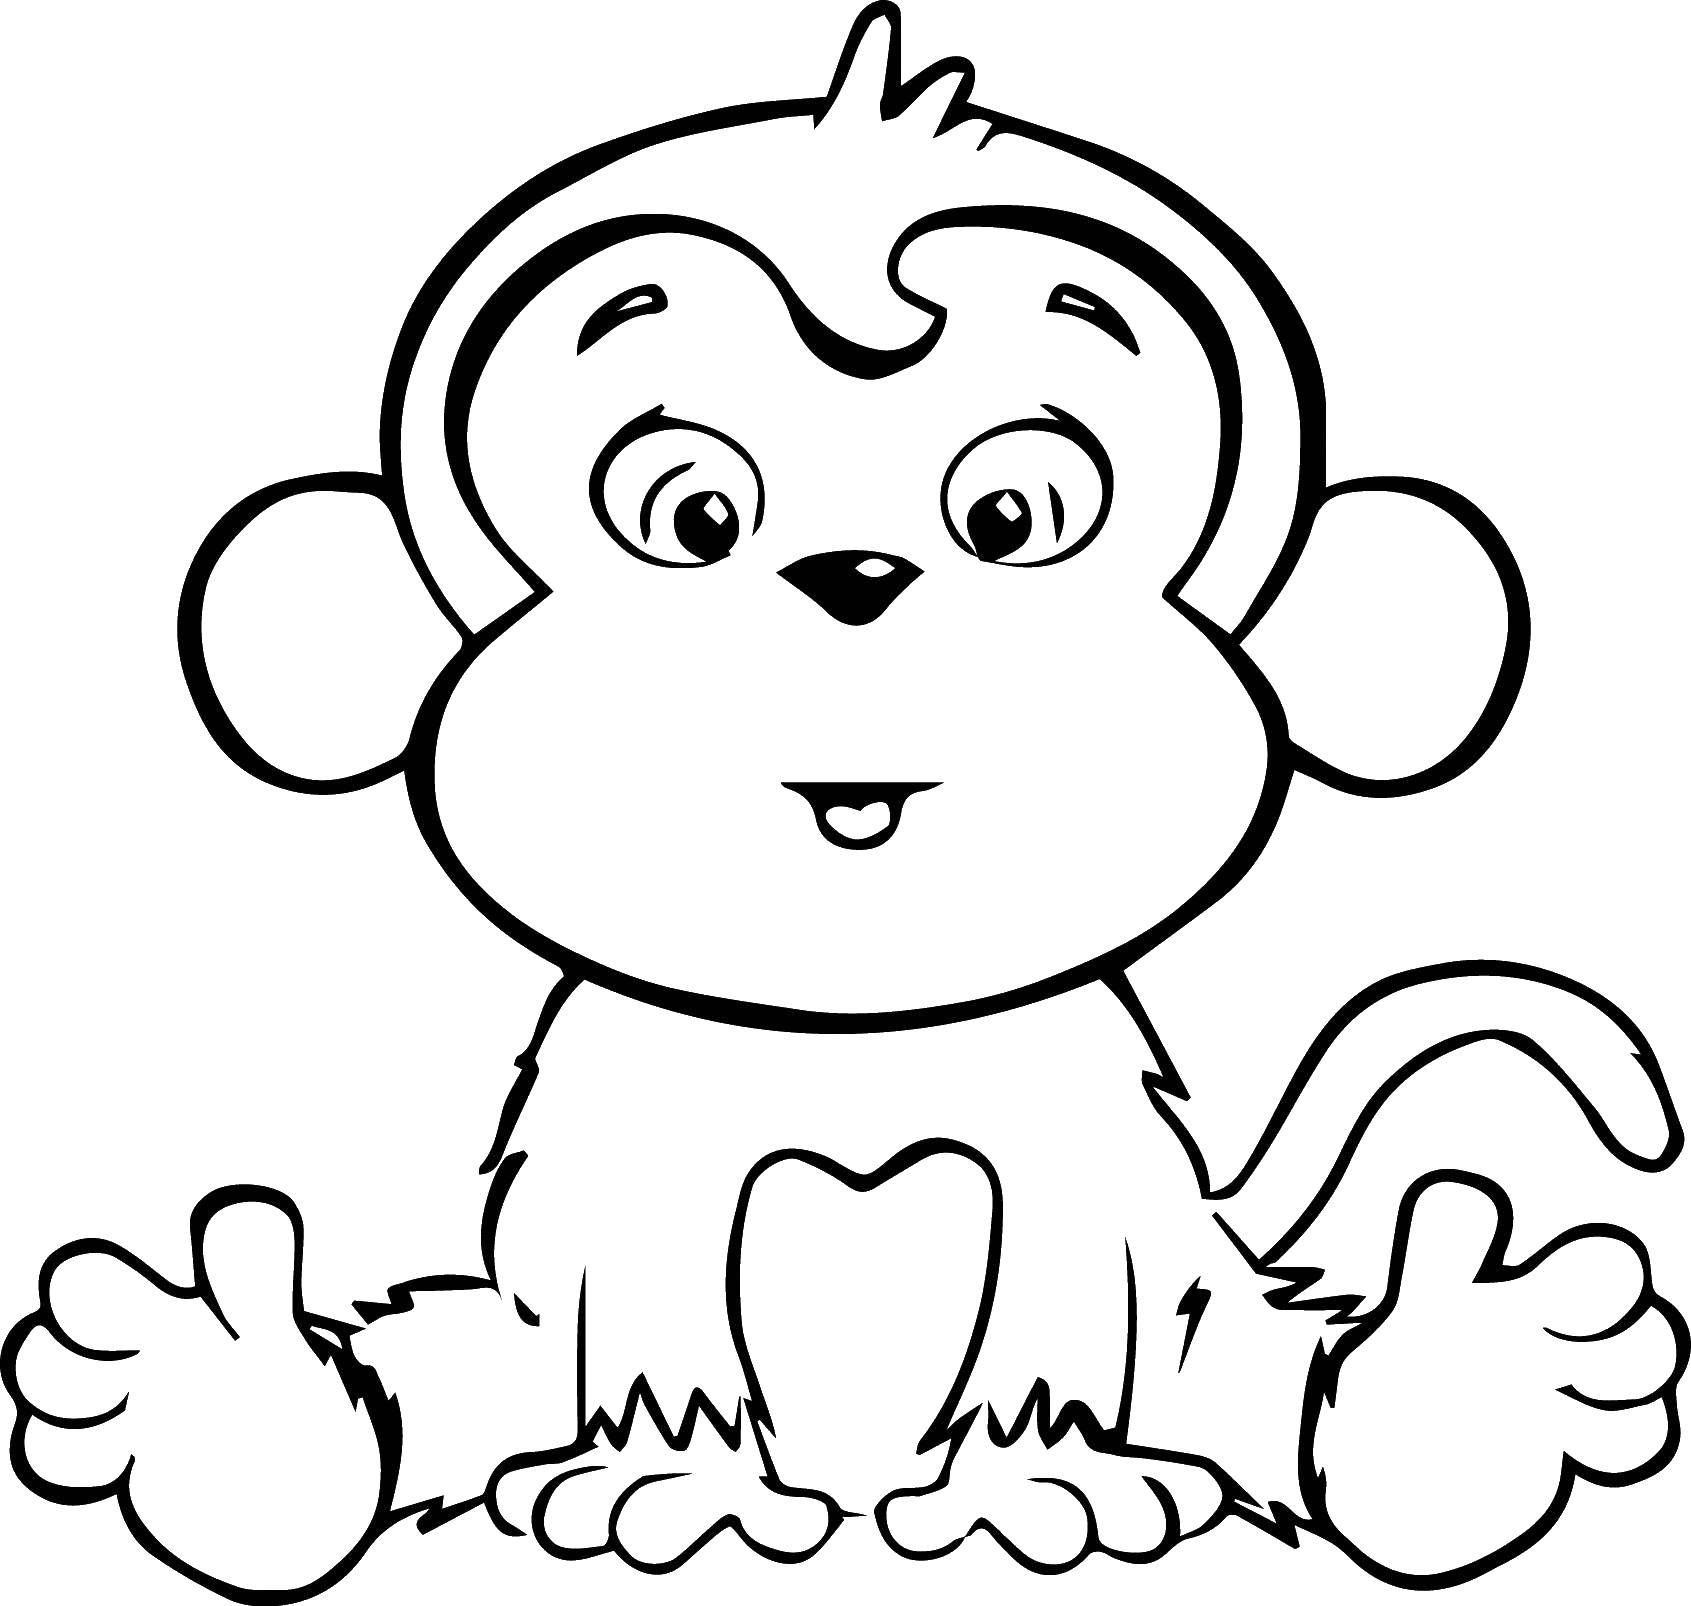 Название: Раскраска Мартышка. Категория: обезьяна. Теги: животные, обезьяна, обезьянка, мартышка.